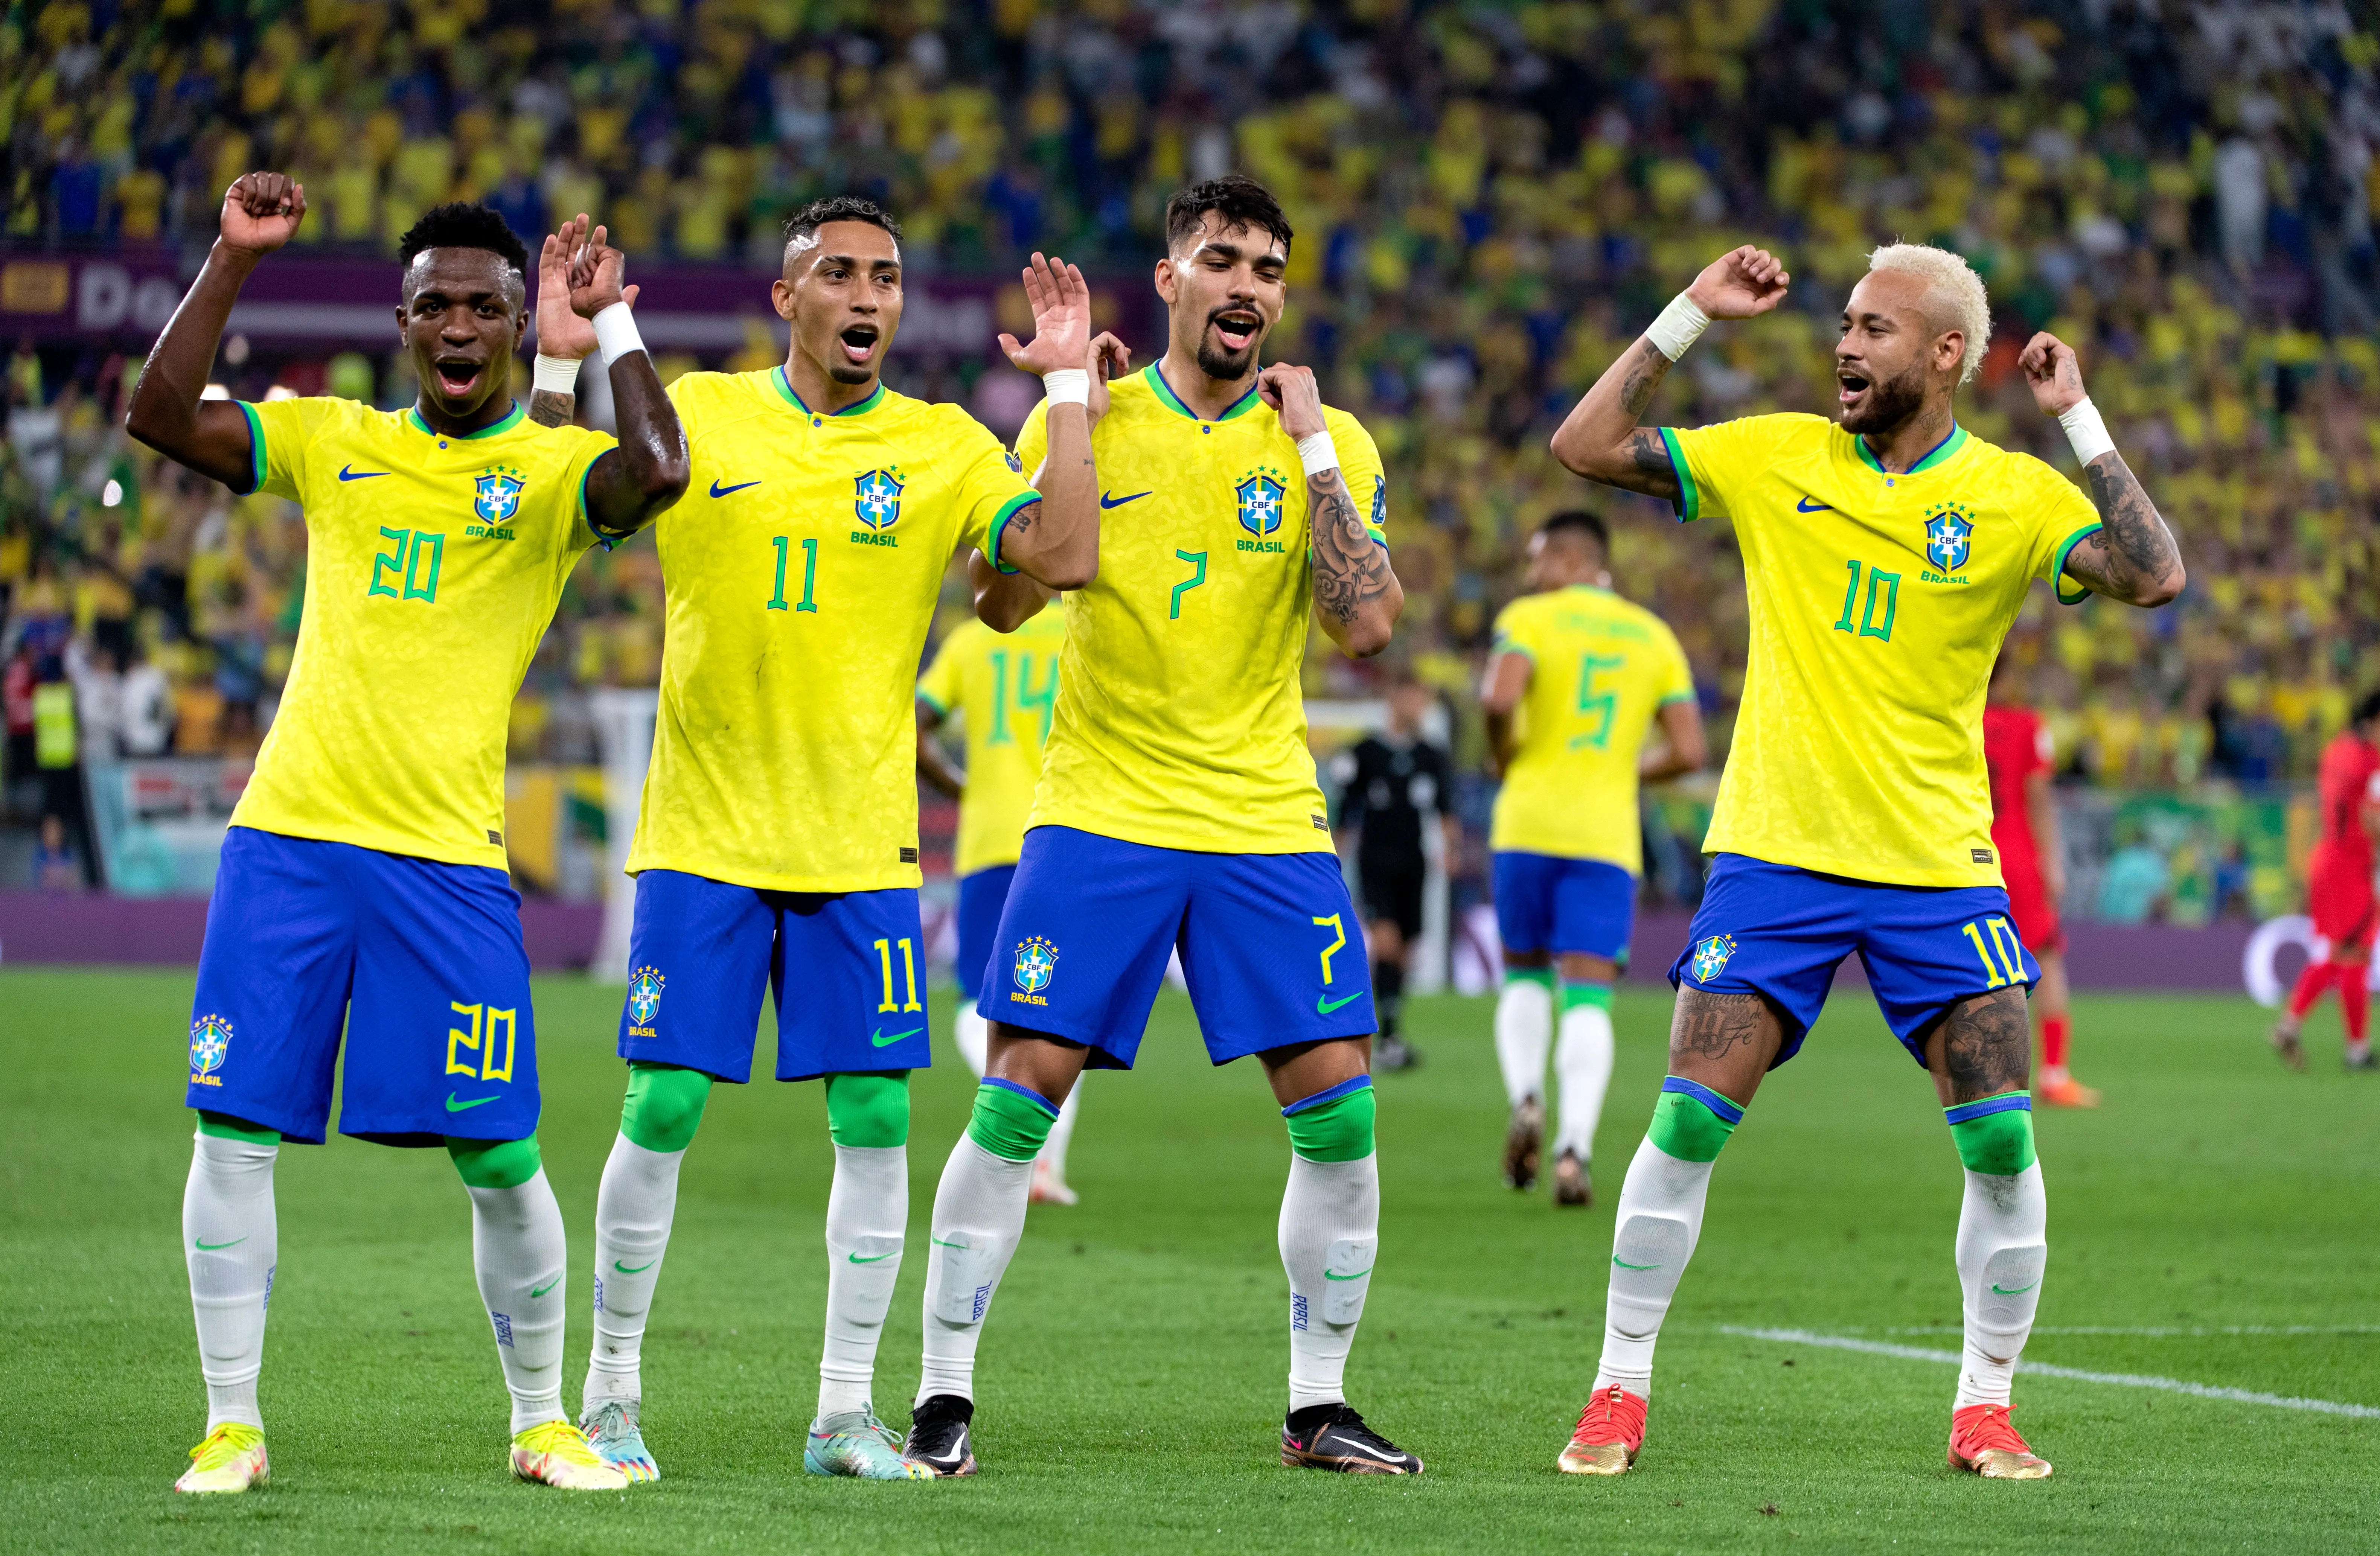 Proximos jogos da Copa do Brasil 2023 